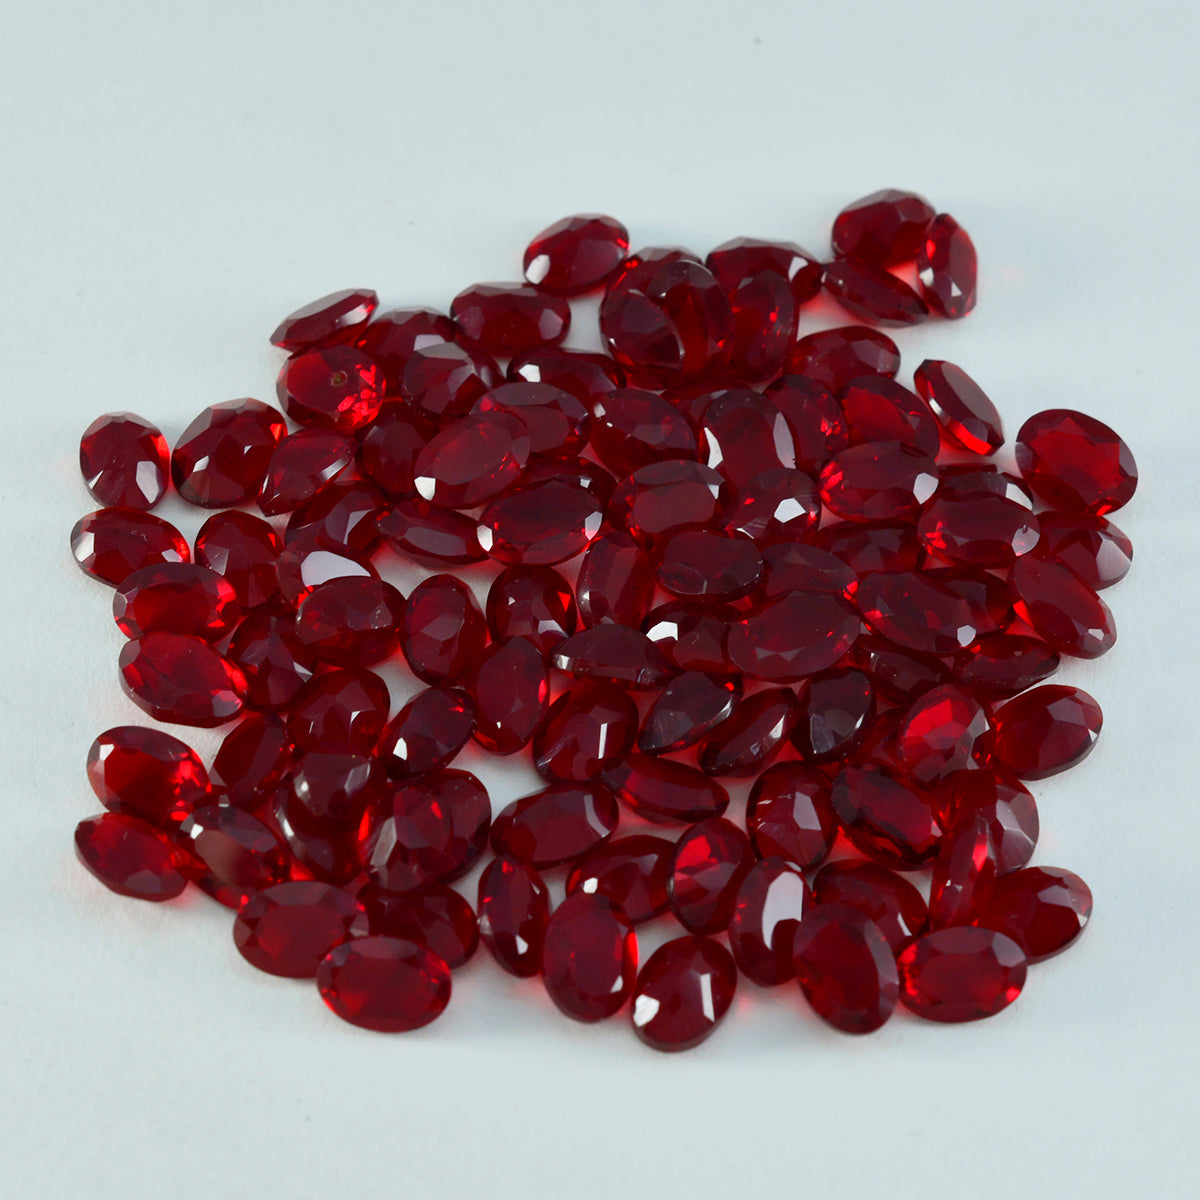 riyogems 1шт красный рубин cz ограненный 5x7 мм овальной формы драгоценный камень хорошего качества